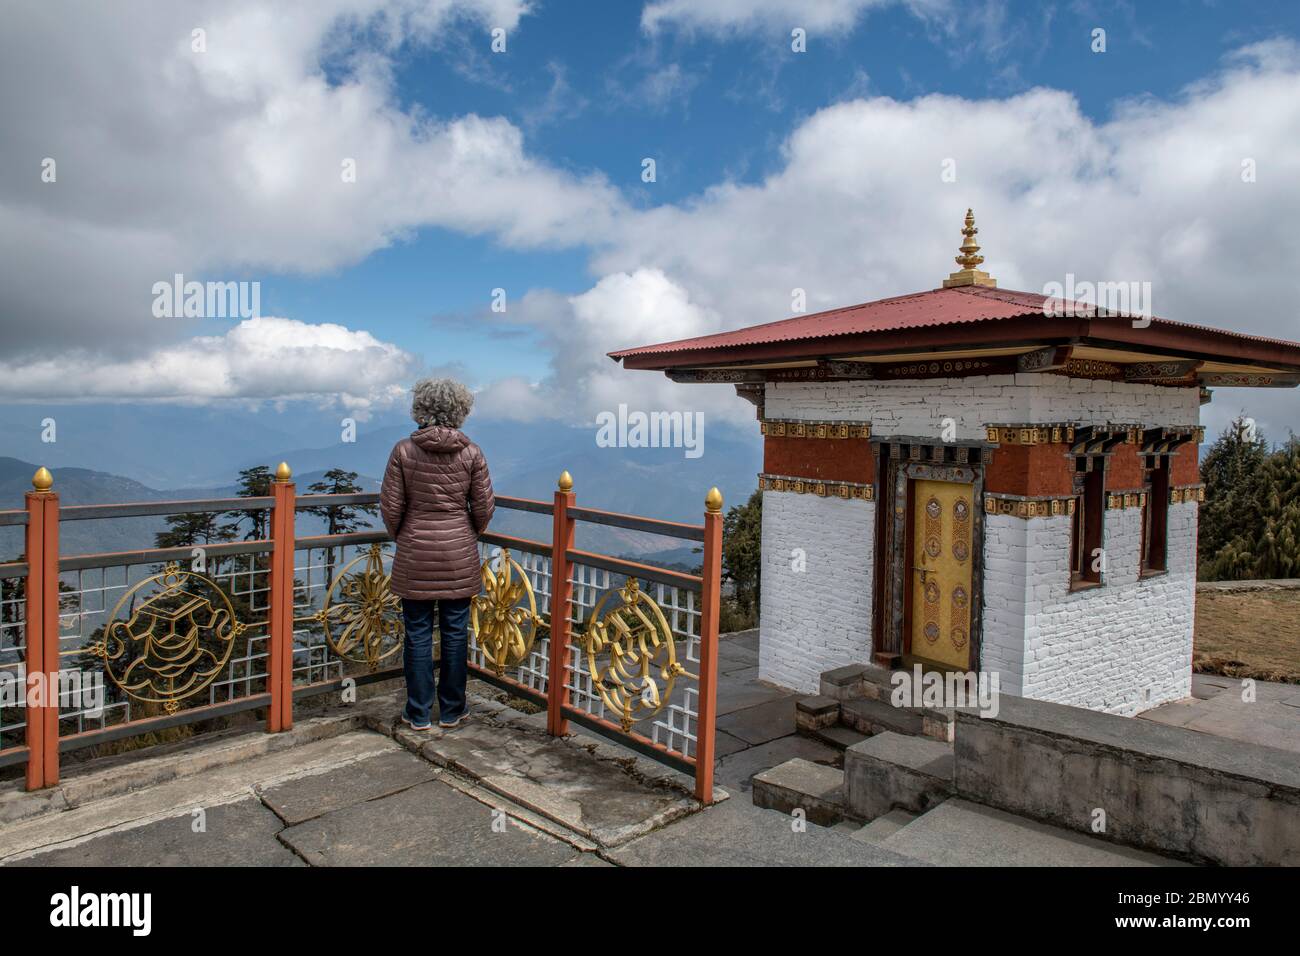 Bhoutan, Col de Dochula. Temple de Druk Wangyel Lhakhng. Mémorial pour célébrer 100 ans de monarchie au Bhoutan. Banque D'Images